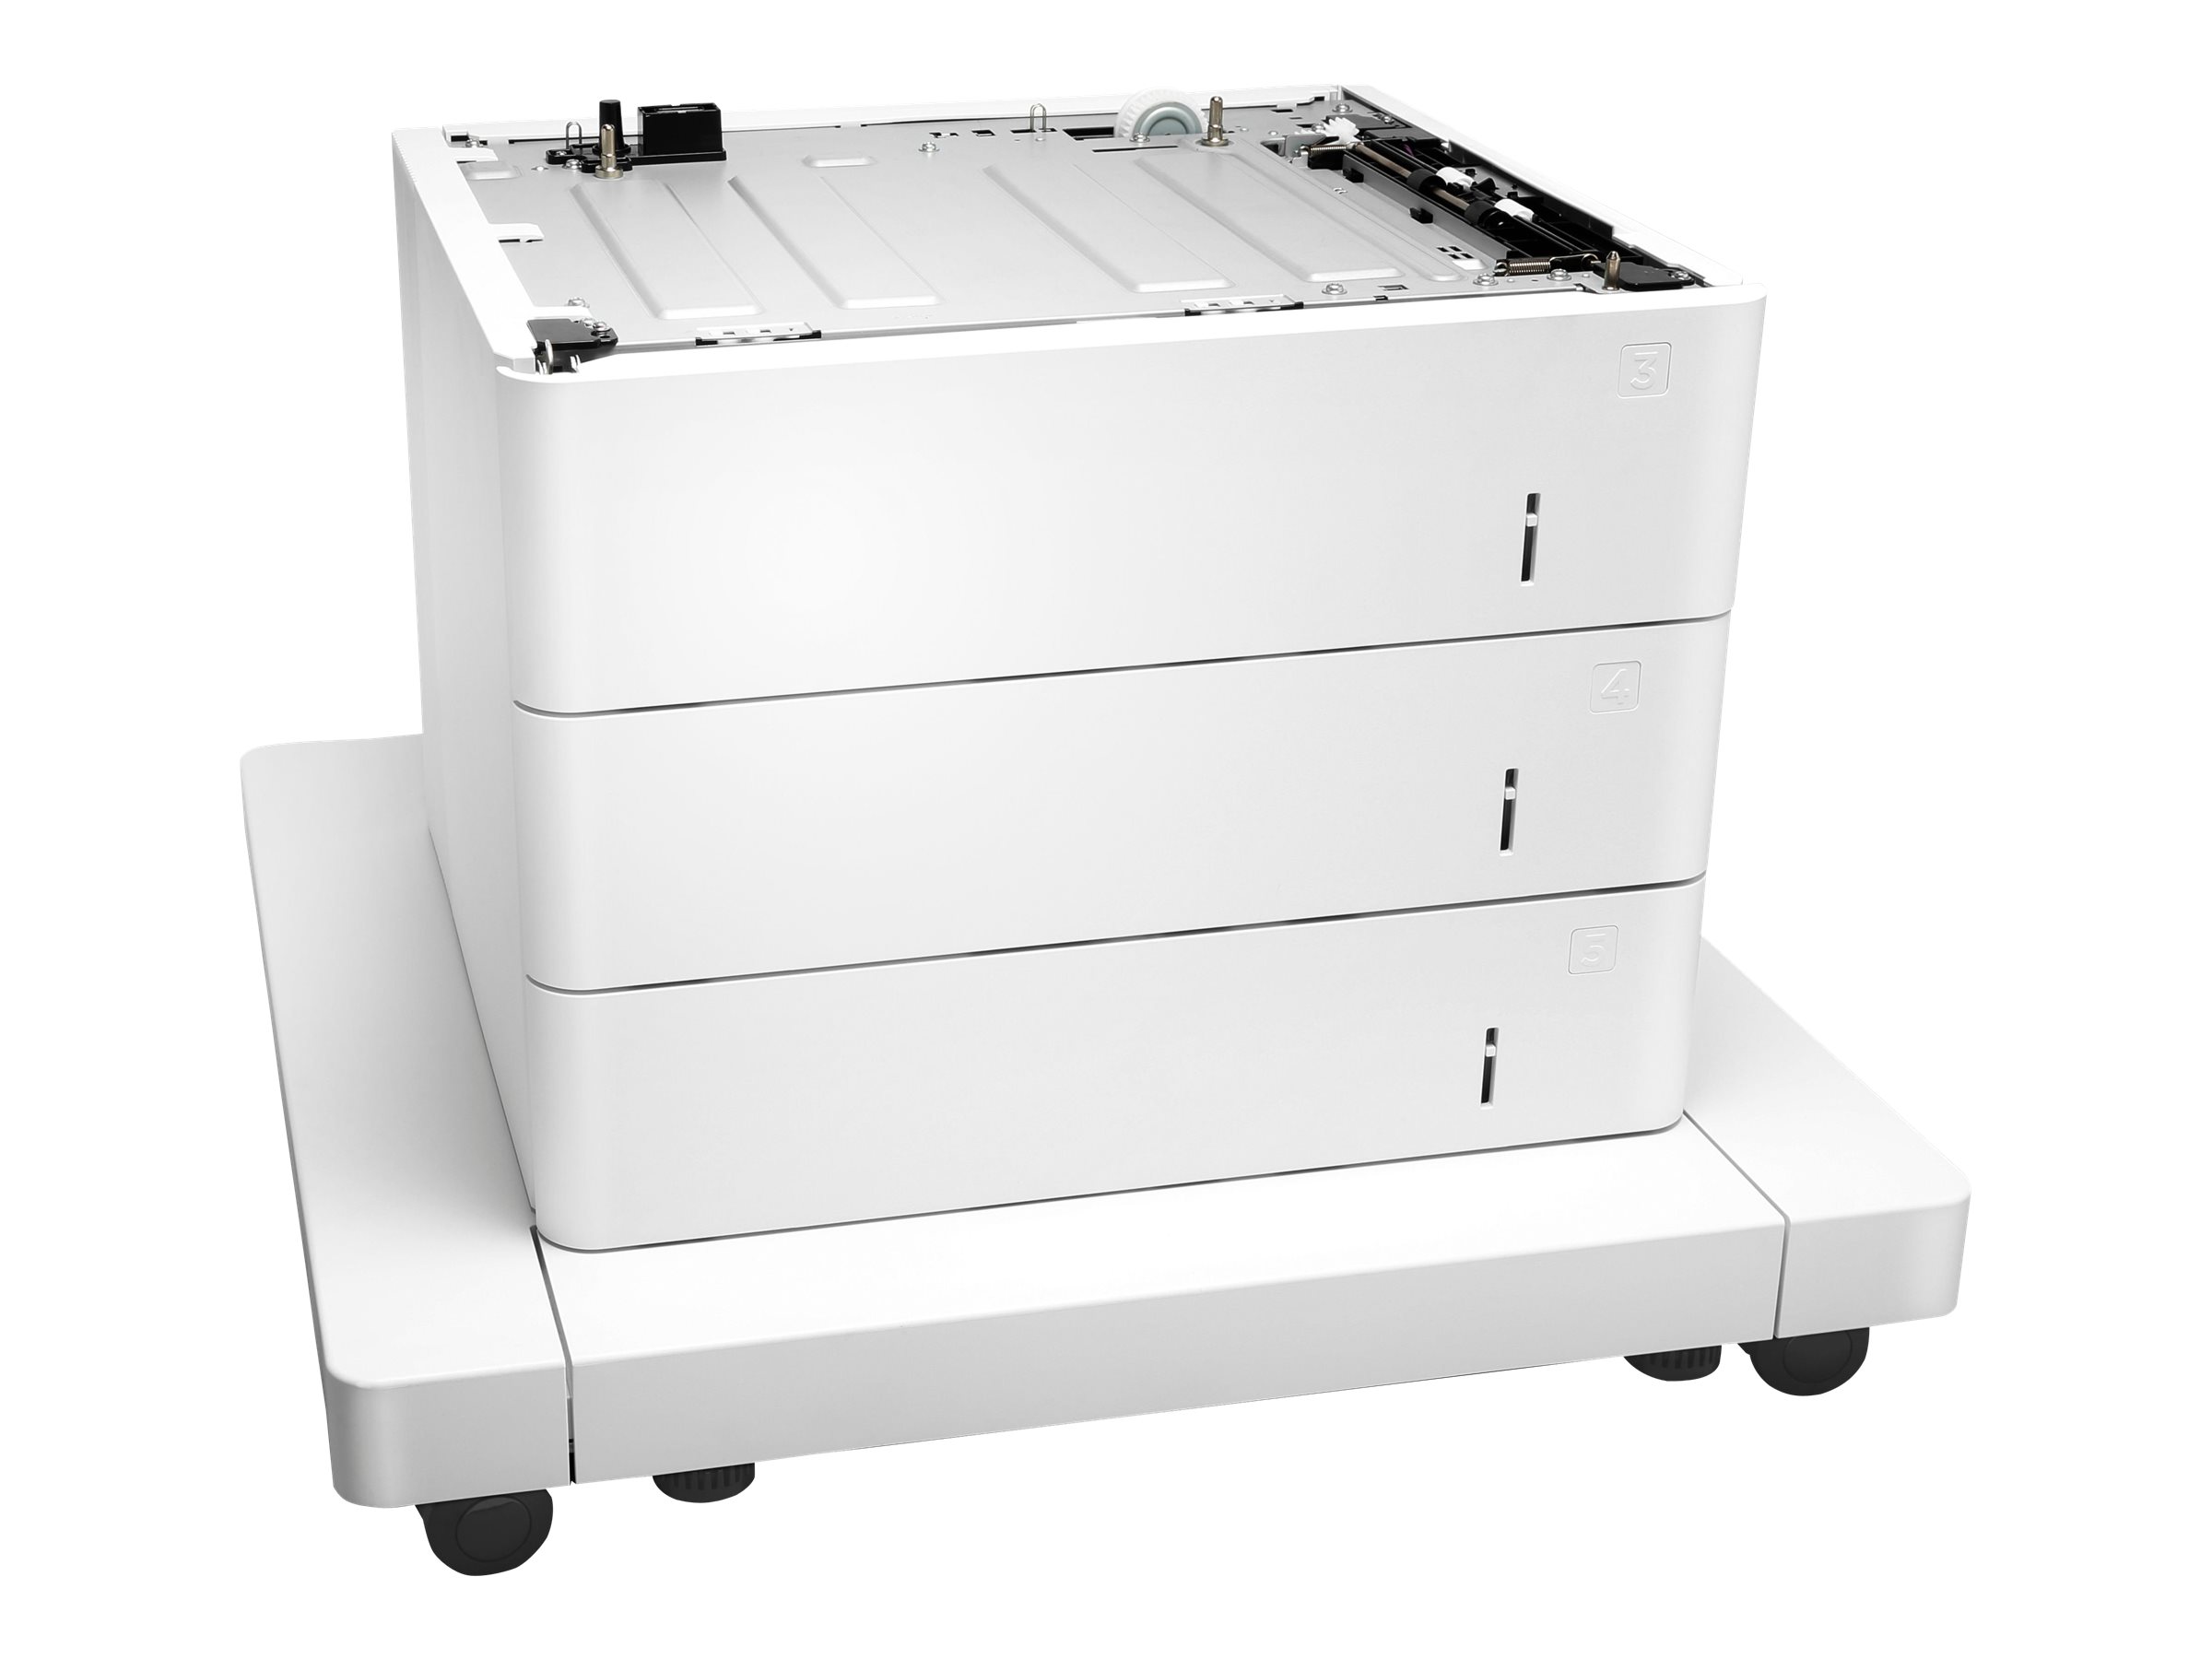 HP Papierzuführung mit Schrank - Druckerbasis mit Medienzuführung - 1650 Blätter in 3 Schubladen (Trays)